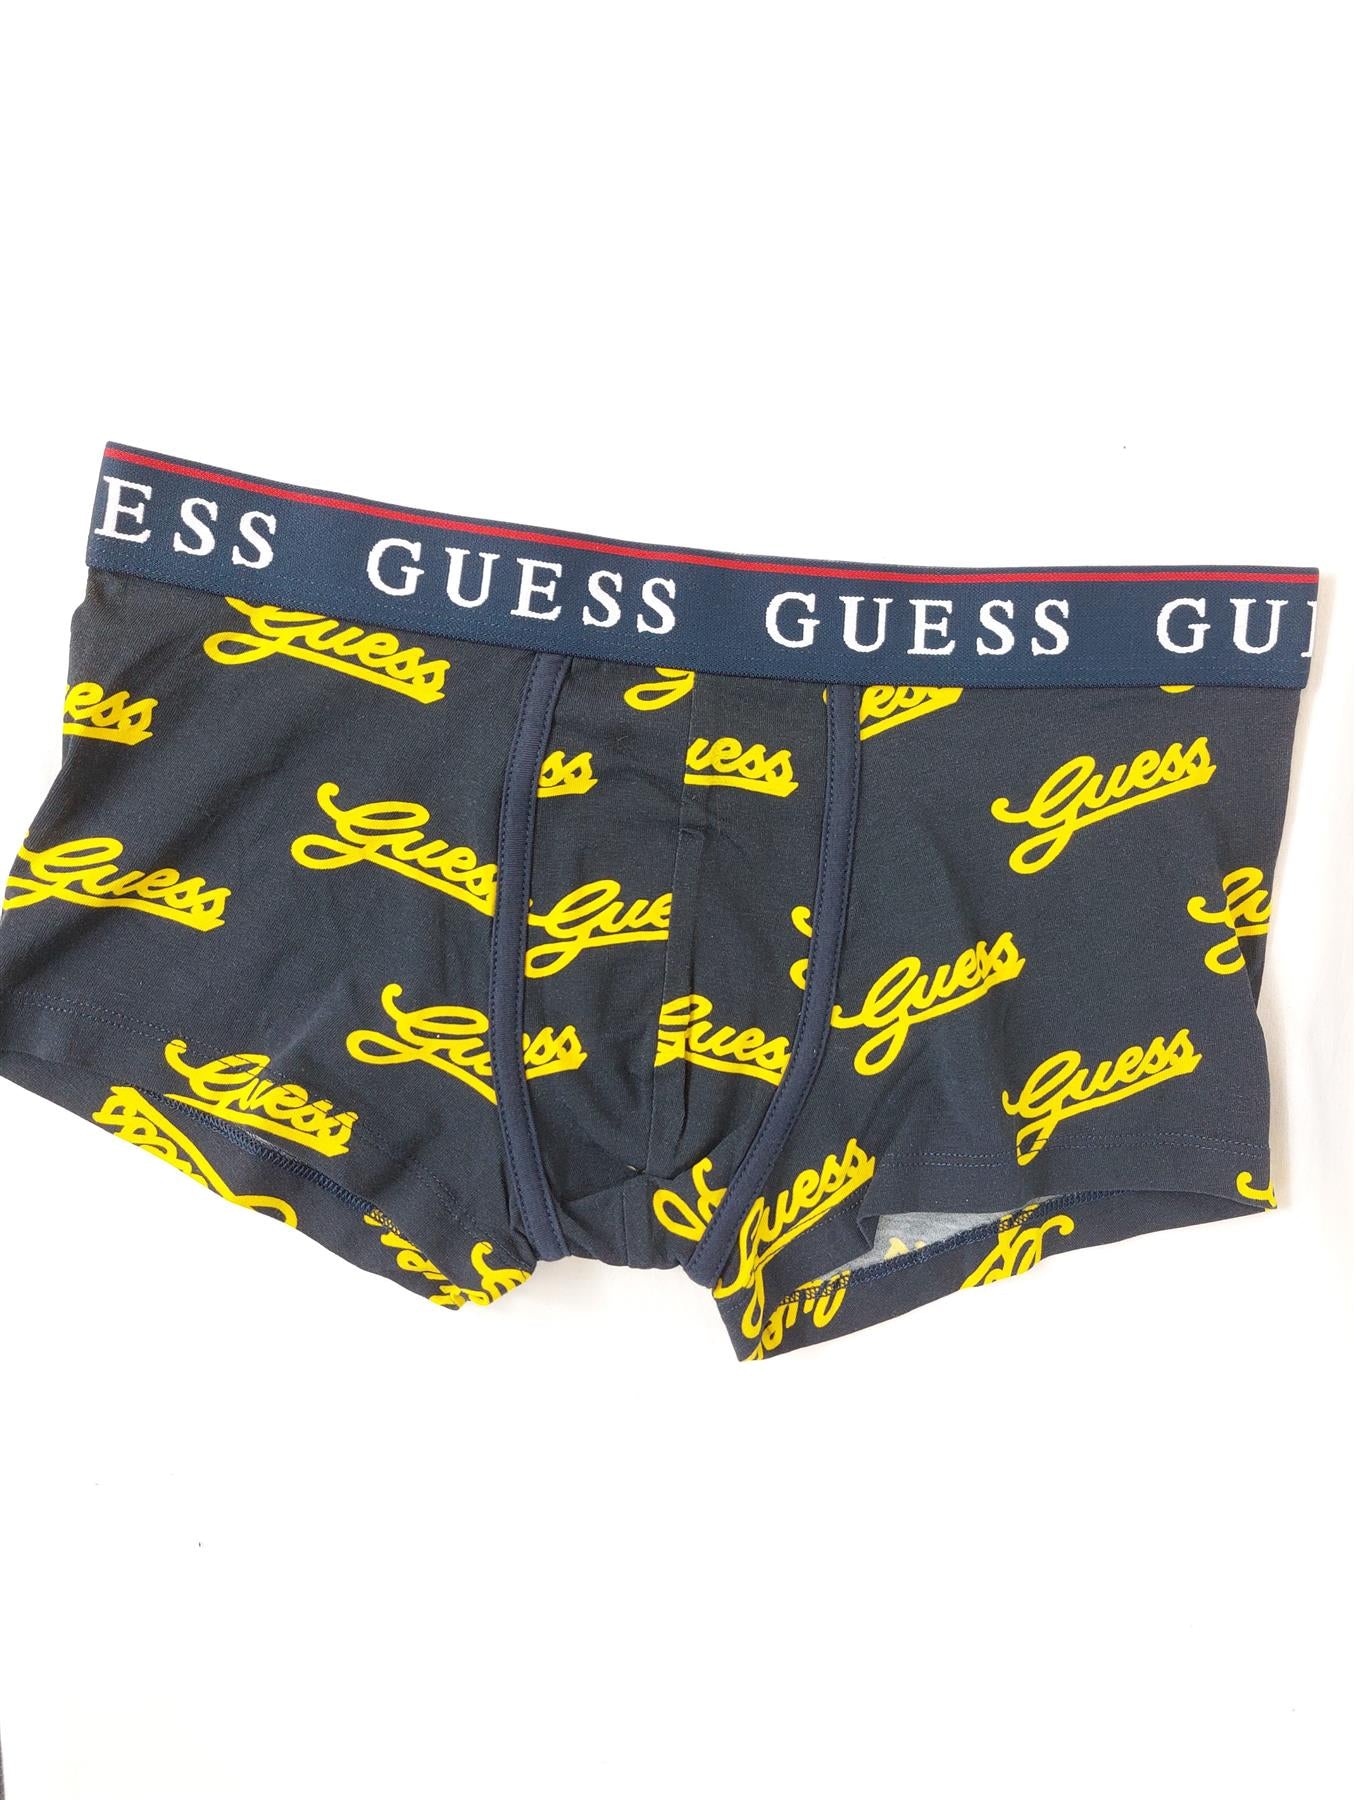 Guess Men's Boxers 3-Pack Cotton Rich Boxer Shorts Trunks Underpants Multipack